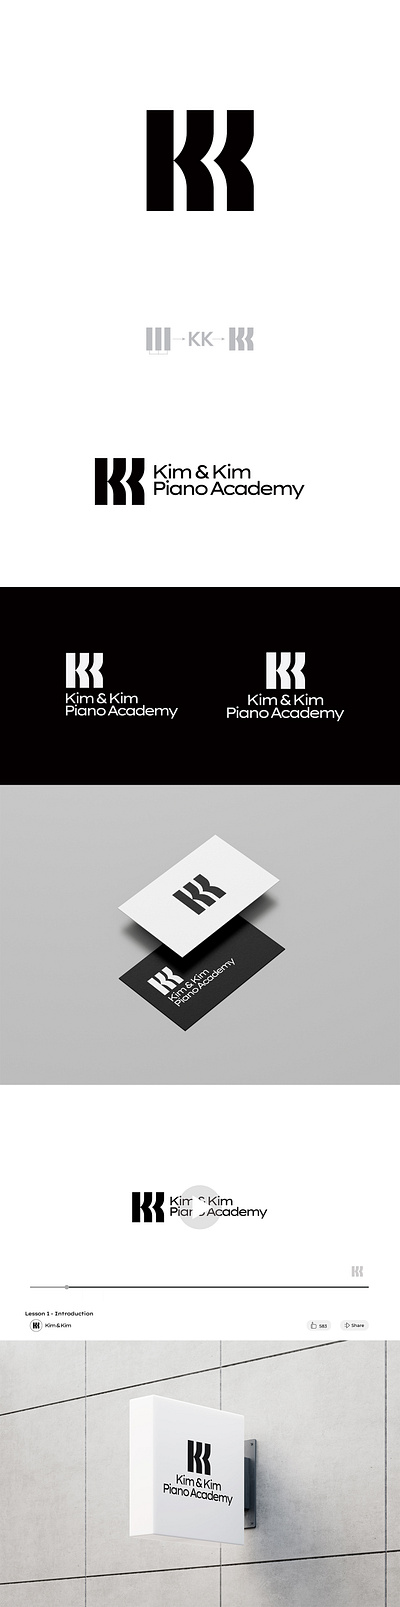 Kim & Kim Piano Academy academy initials k letter lettermark piano piano keys